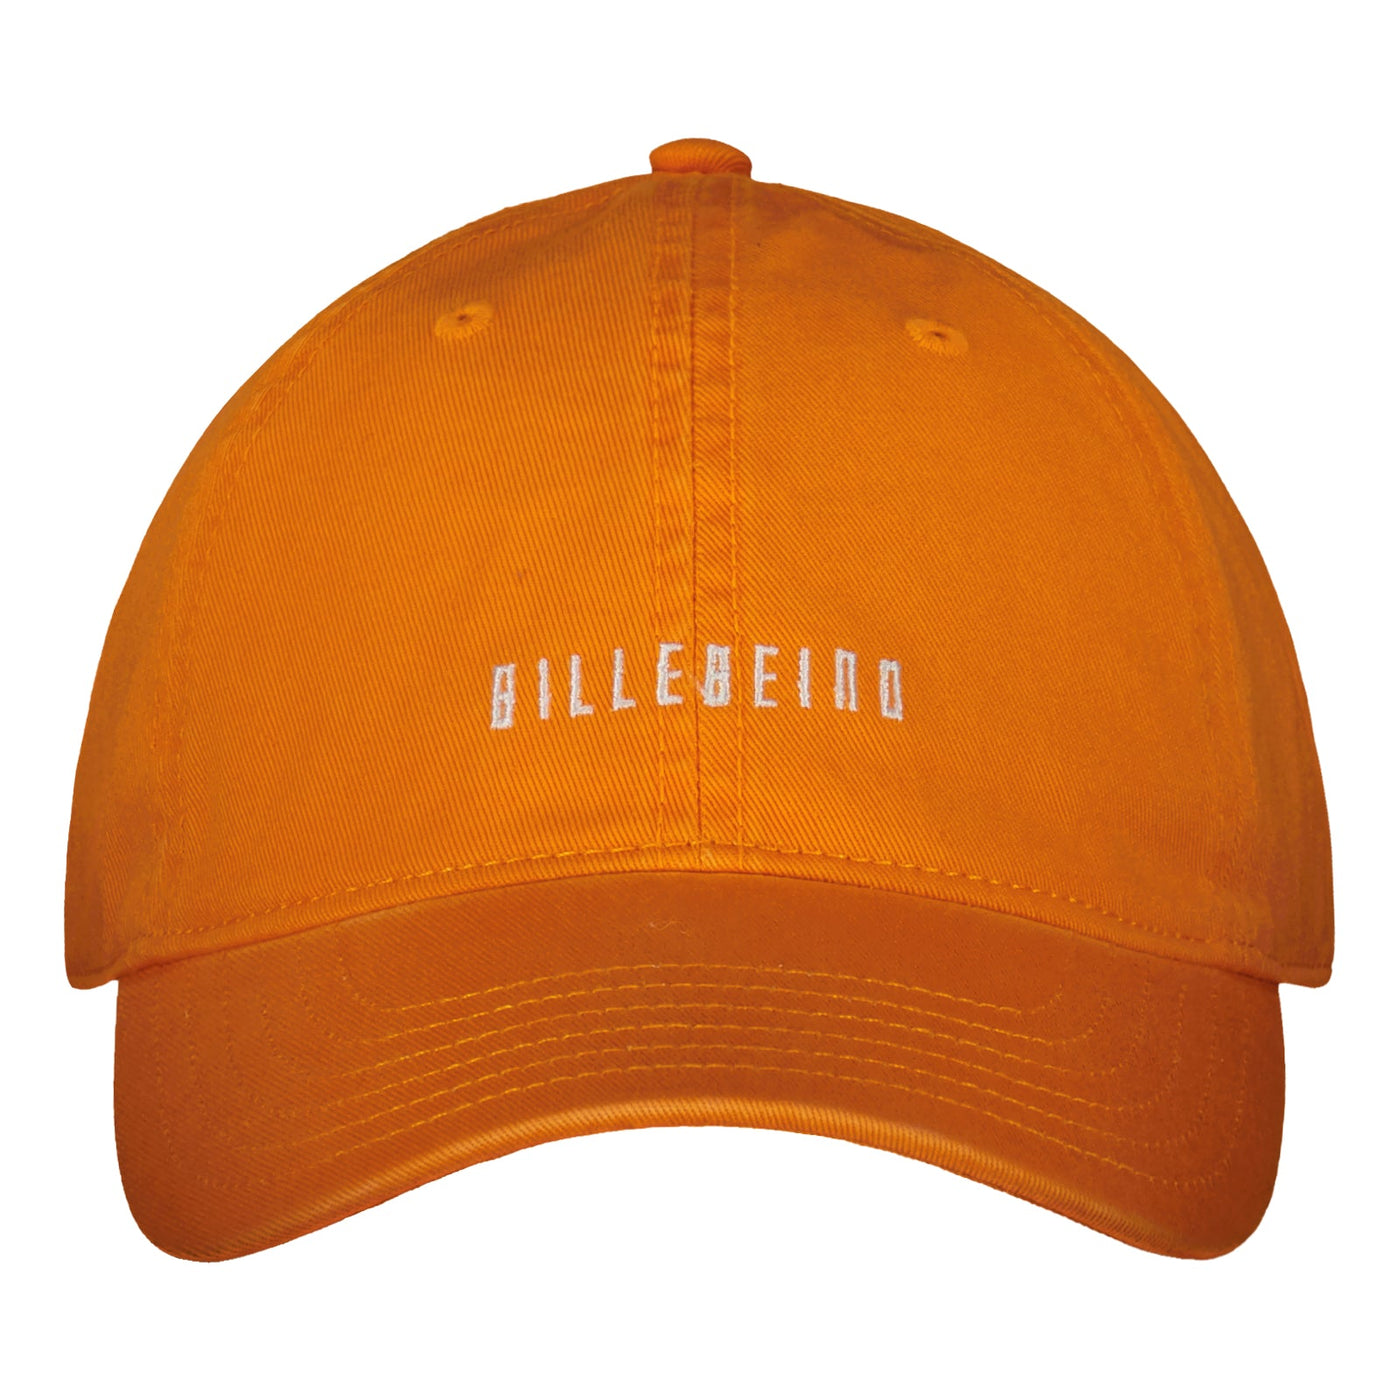 BILLEBEINO DAD CAP